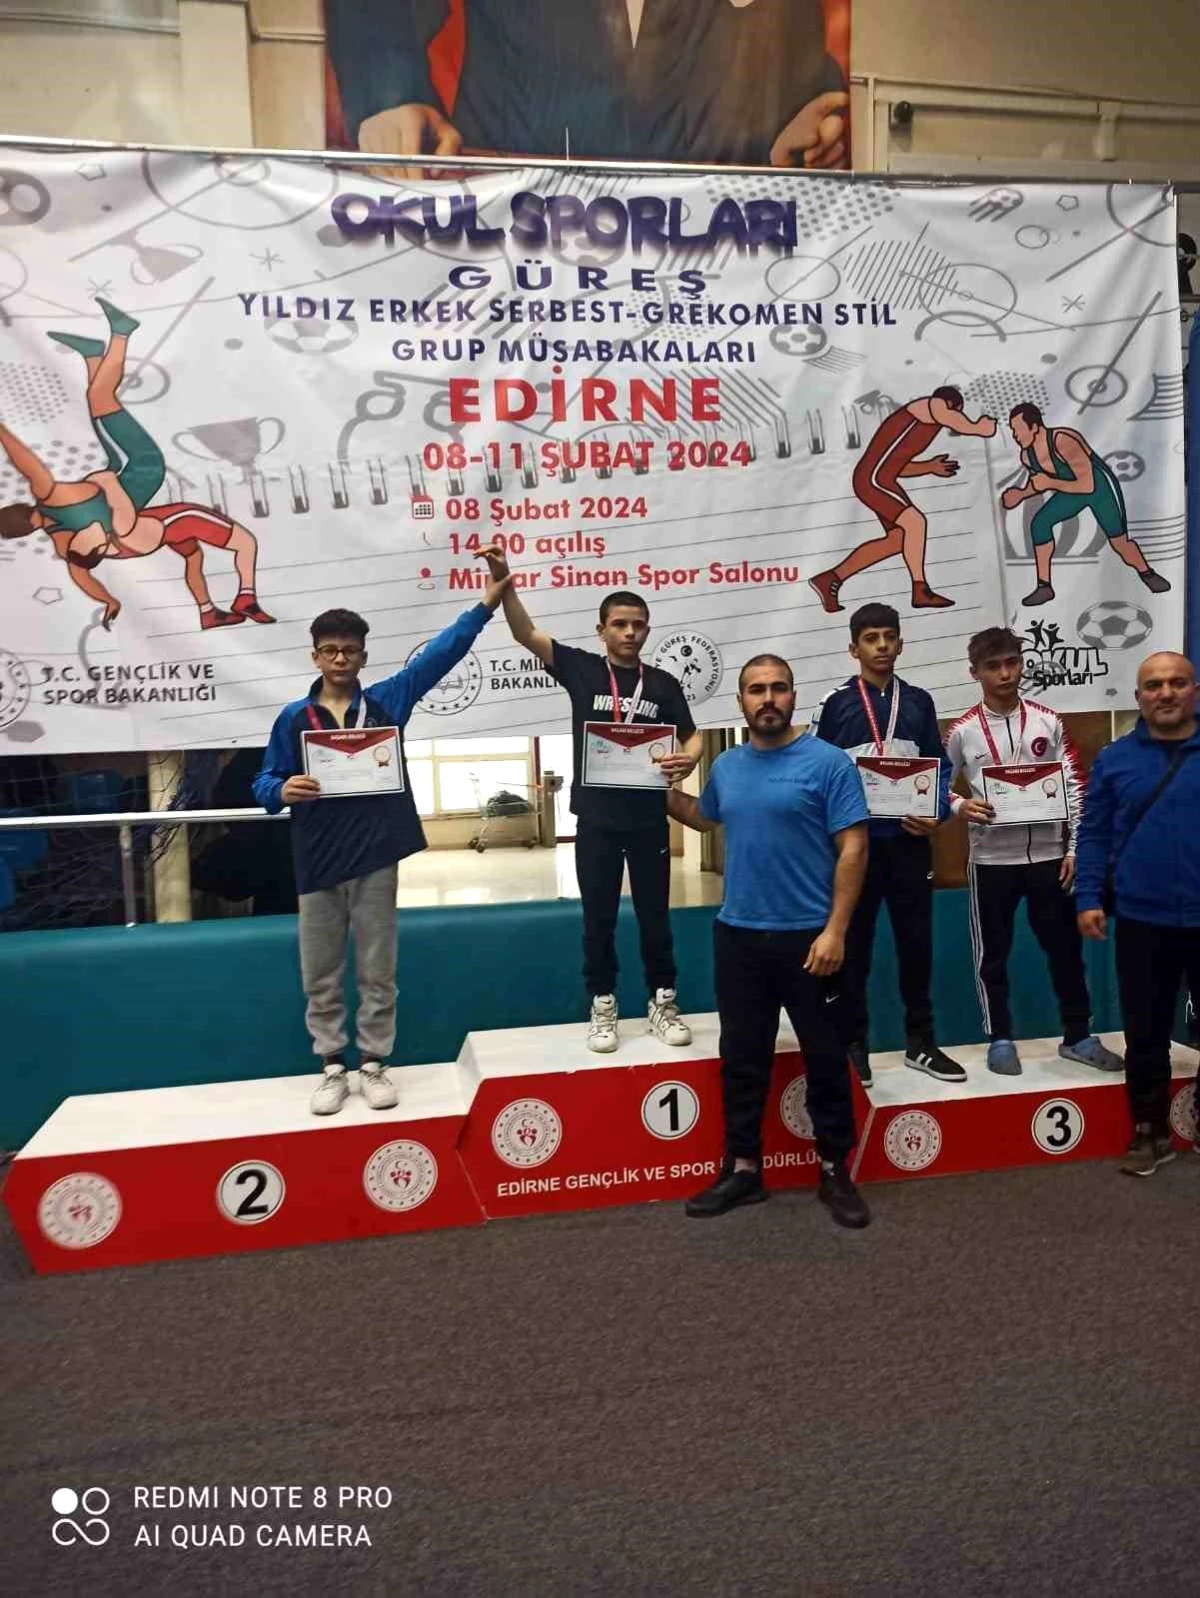 Kütahya Belediyespor Kulübü Grekoromen Güreş Müsabakalarında Gümüş Madalya Kazandı